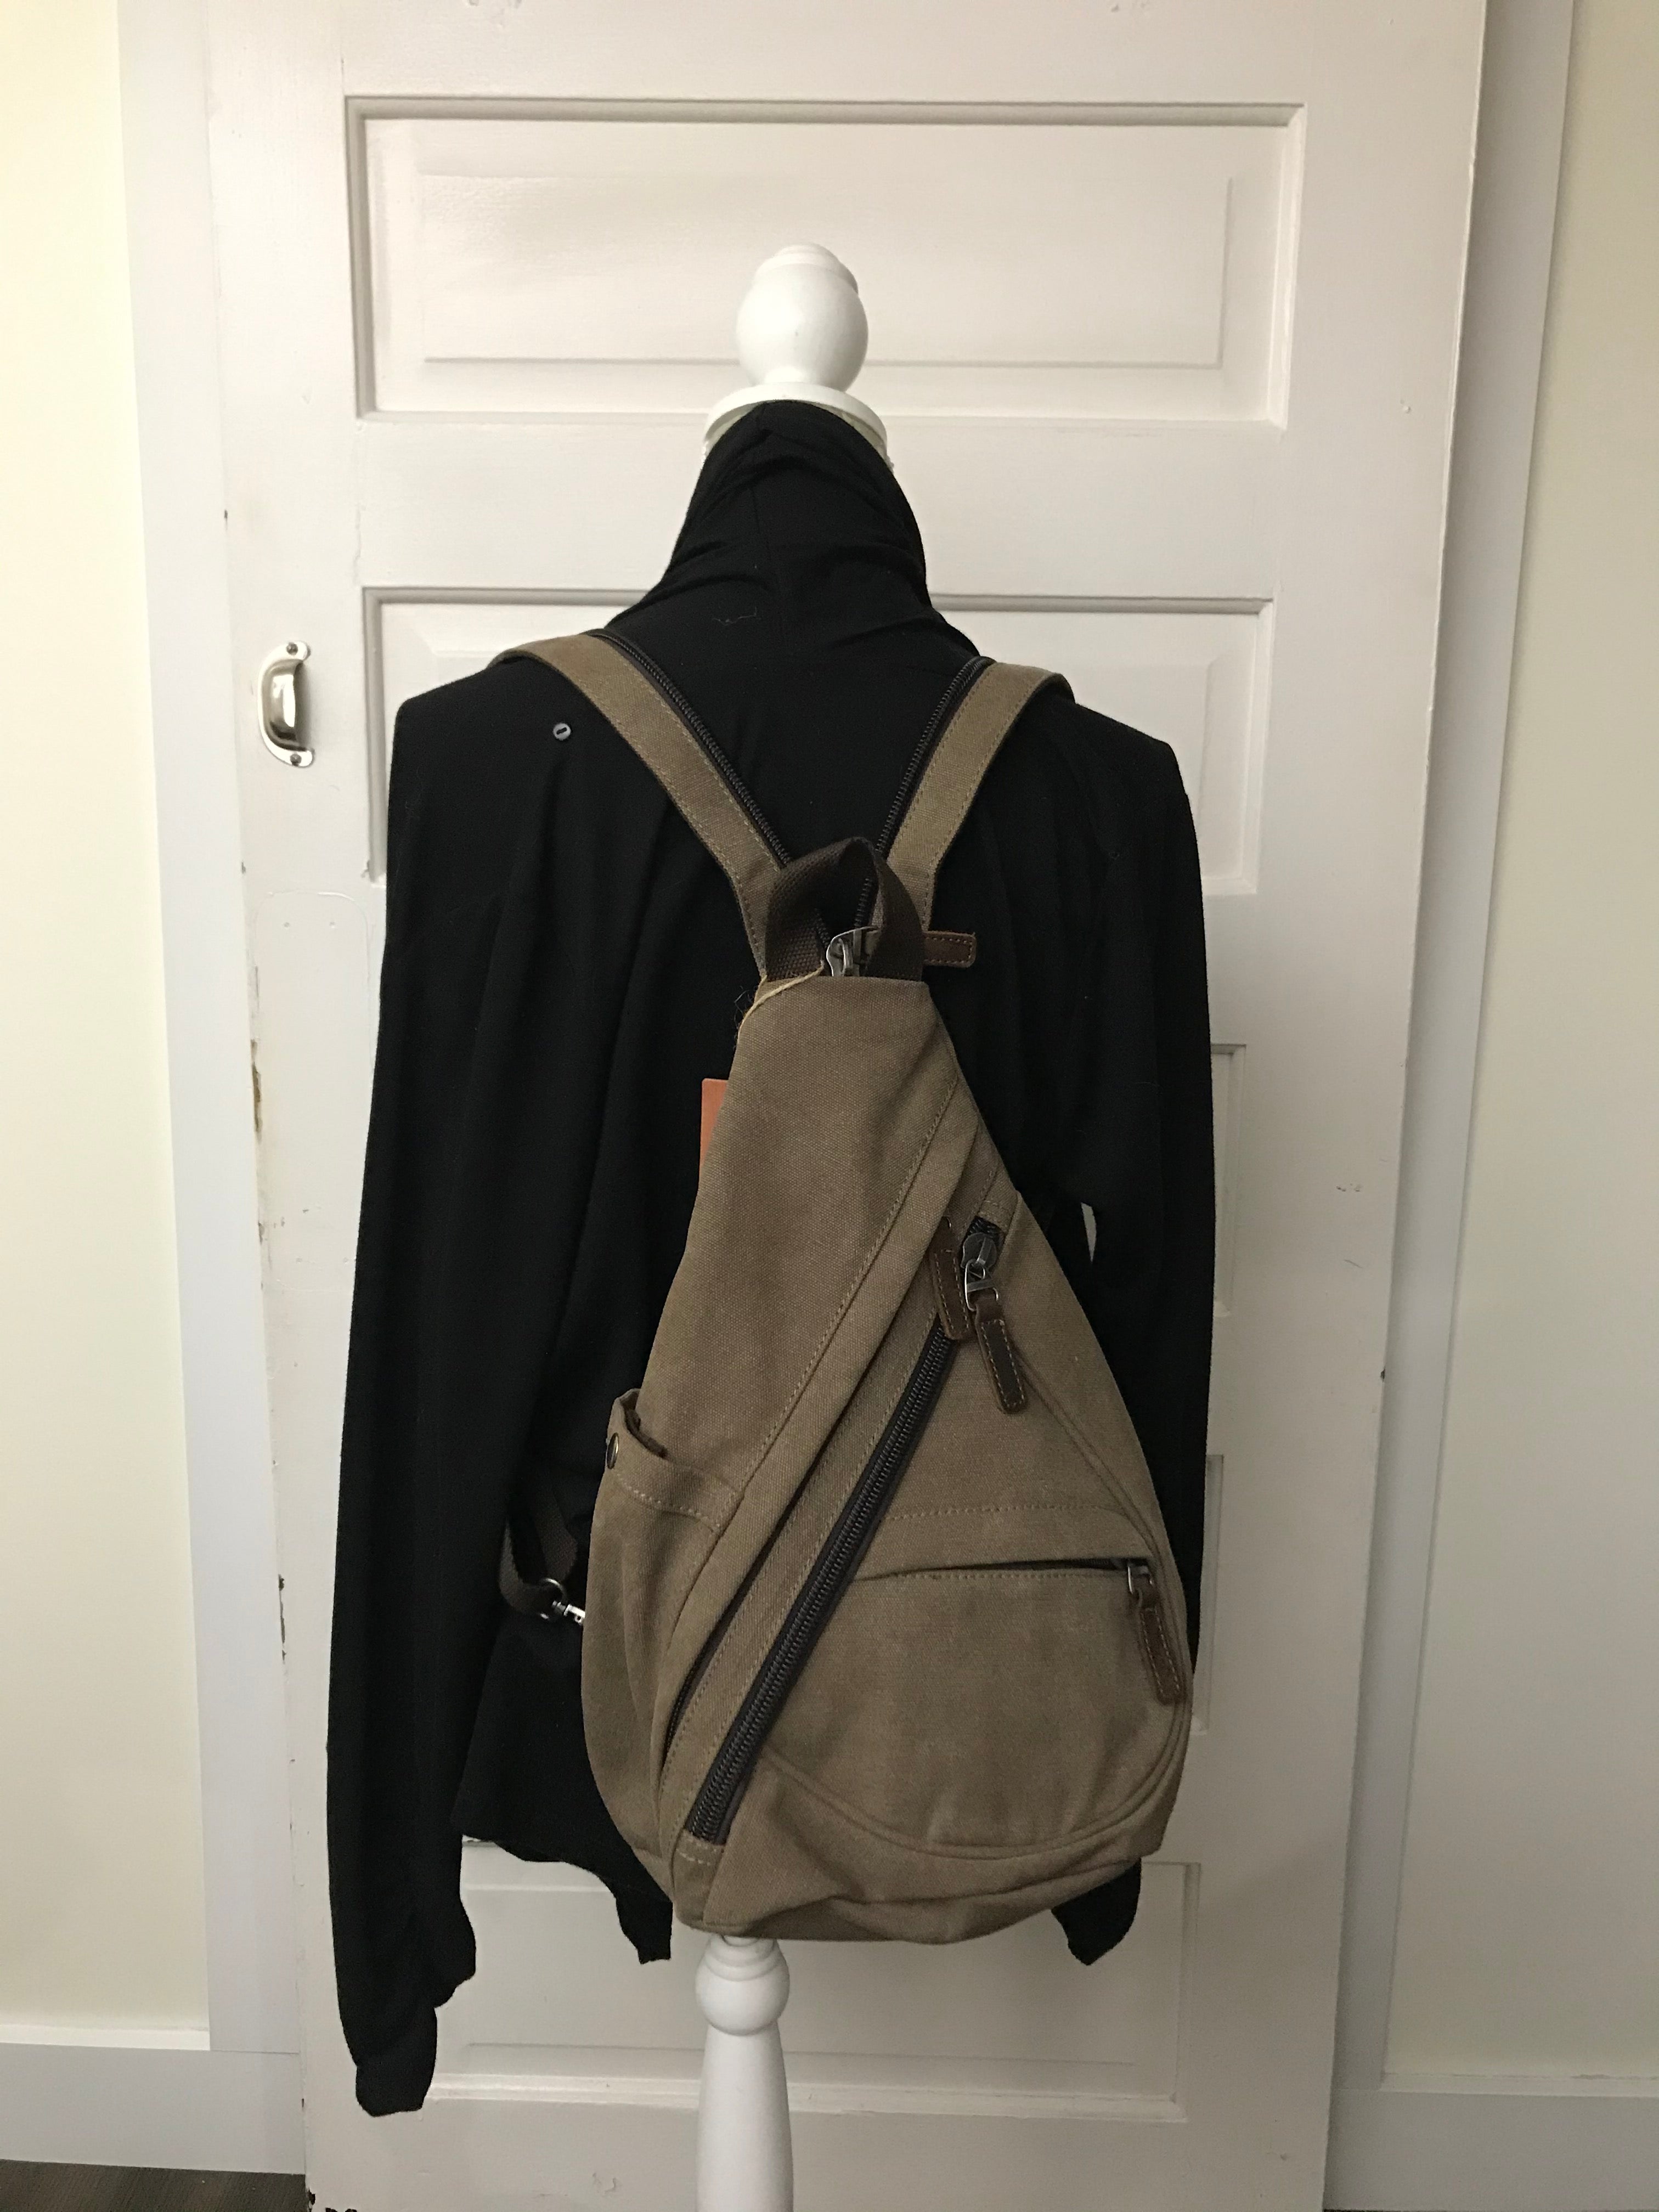 daVan backpack sling bag - brown